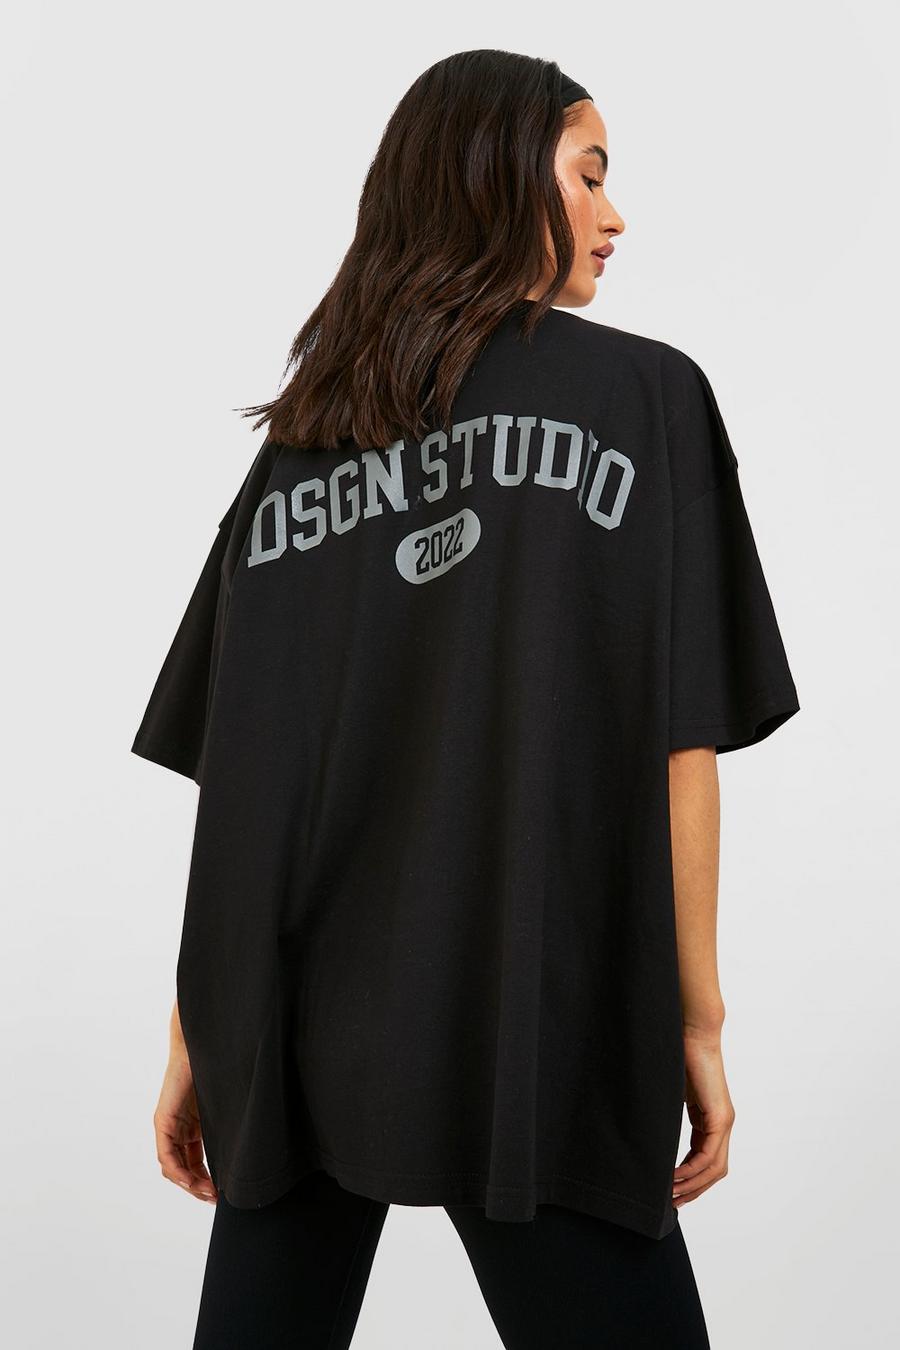 Black Dsgn Studio Back Print Oversized T-shirt image number 1